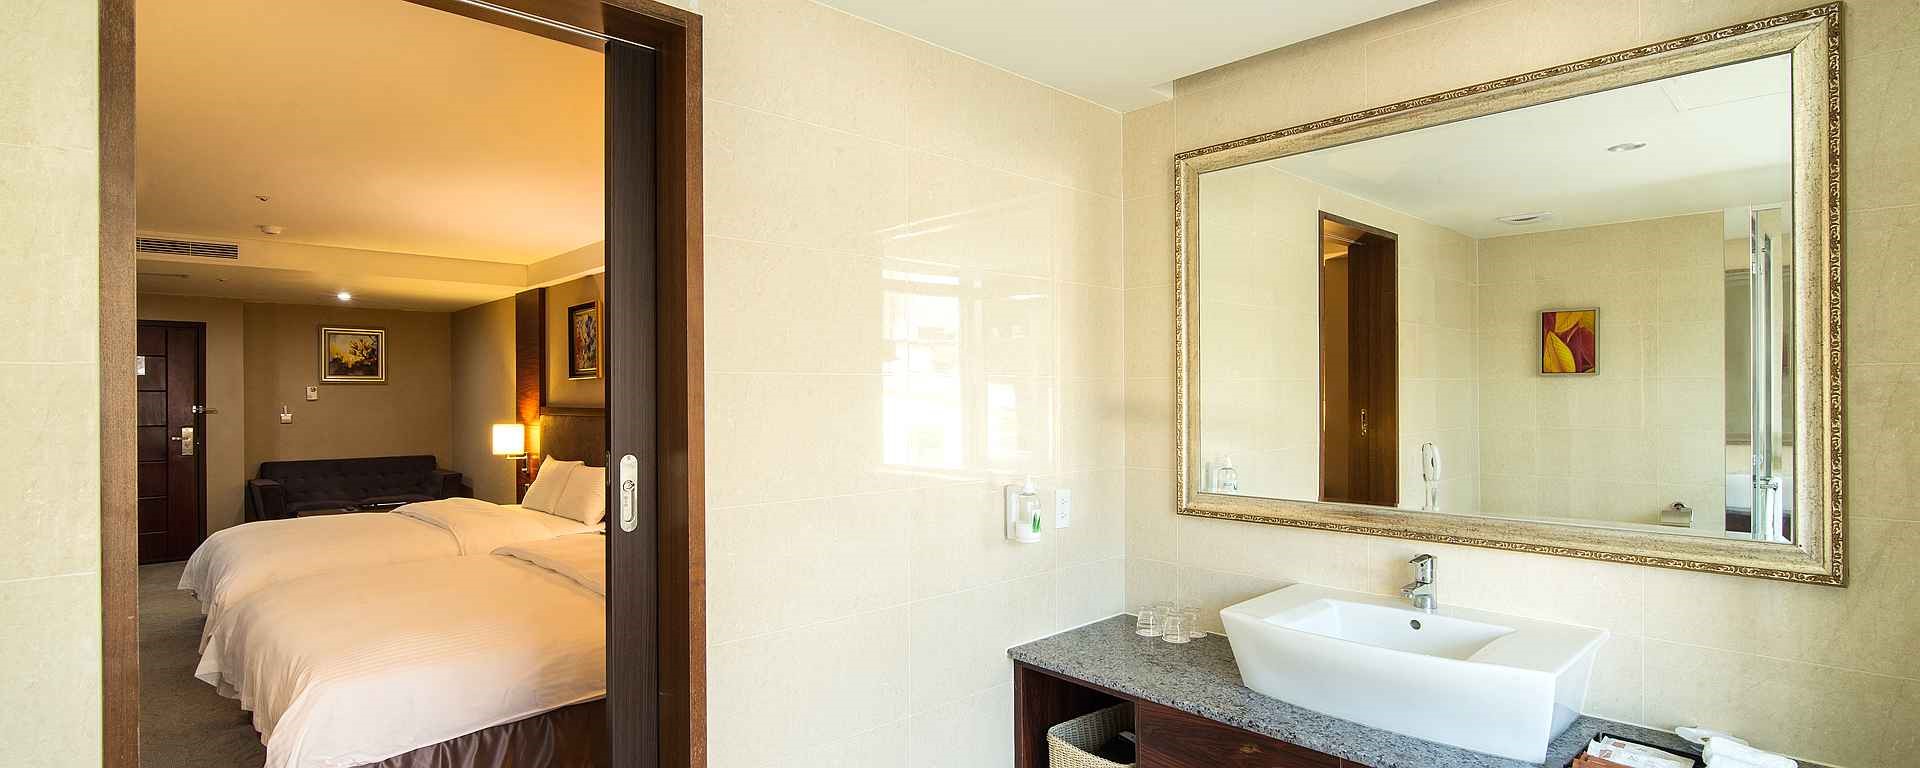 阿思瑪麗景大飯店-高雅四人房浴室